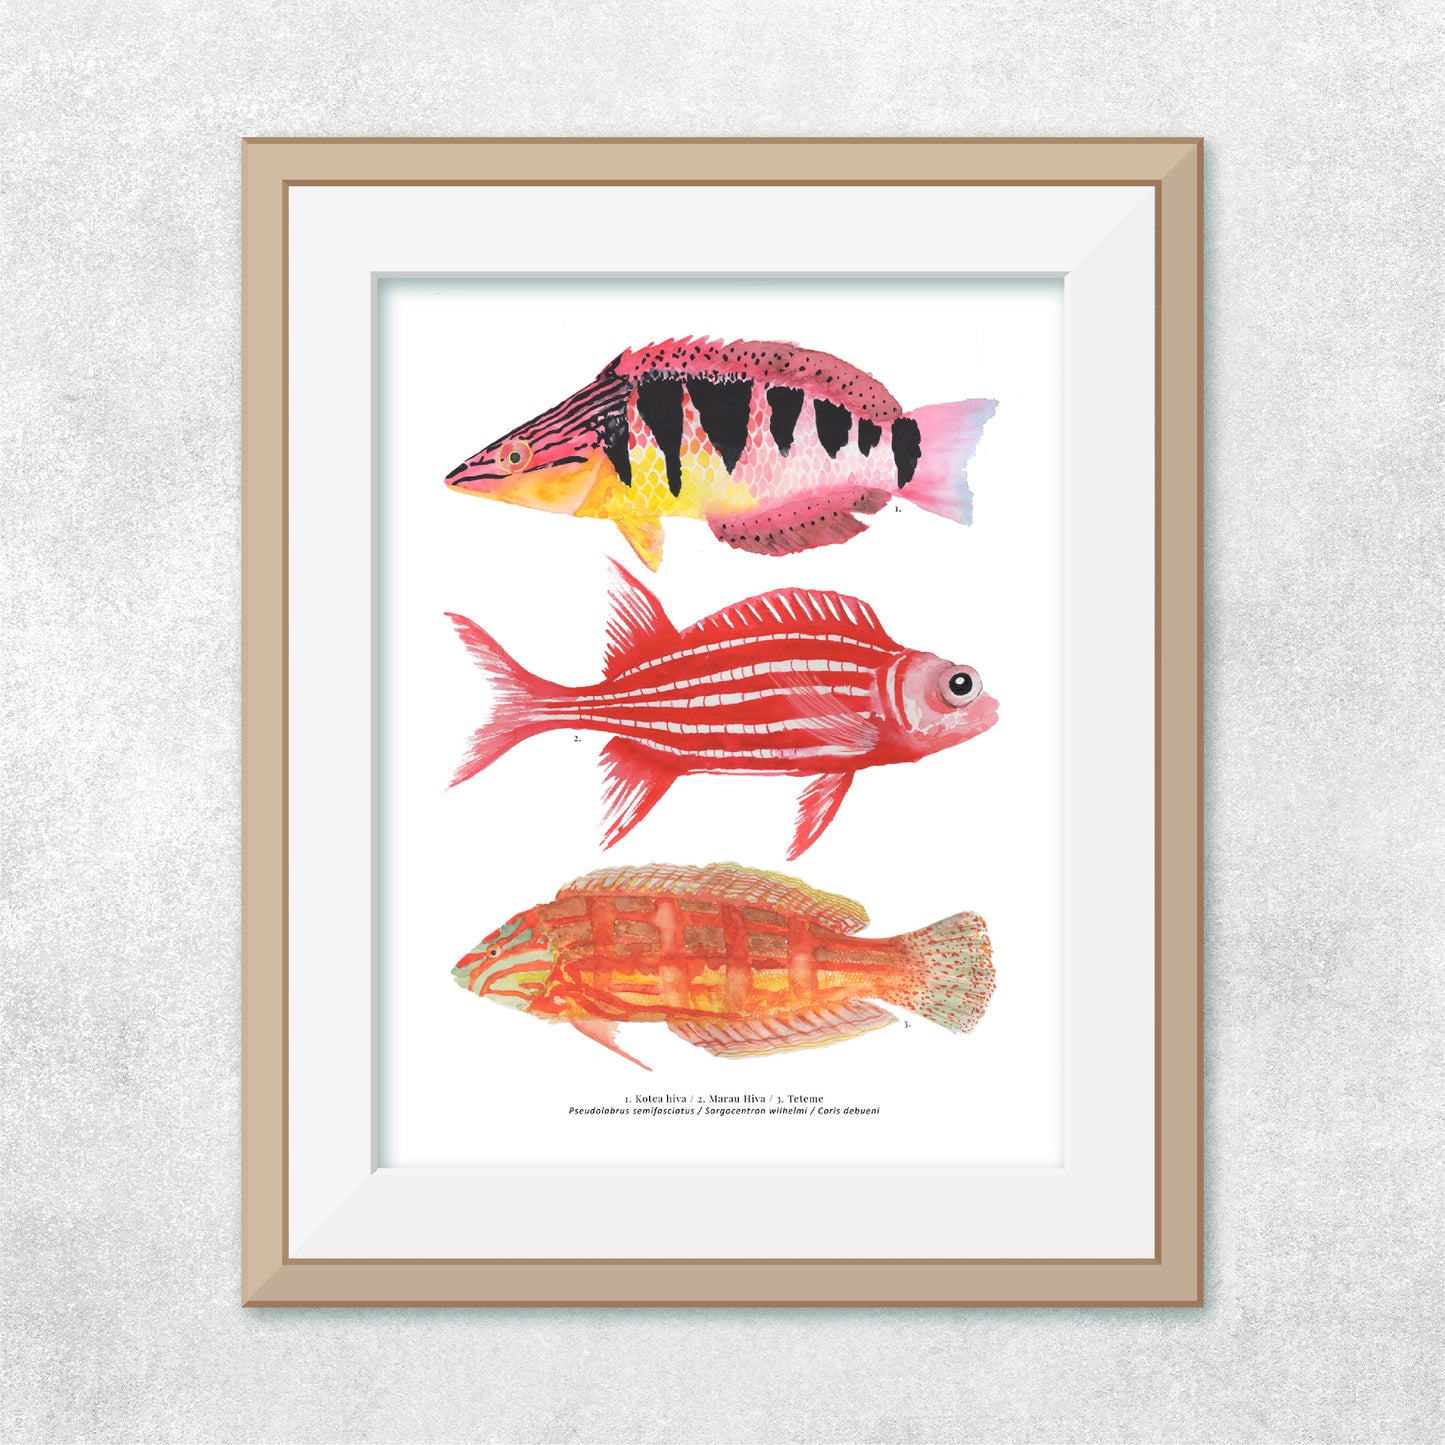 Reproducción de una ilustración en acuarela de 3 peces coloridos, pez Kotea hiva, pez marau hiva, pez teteme, con marco de madera.